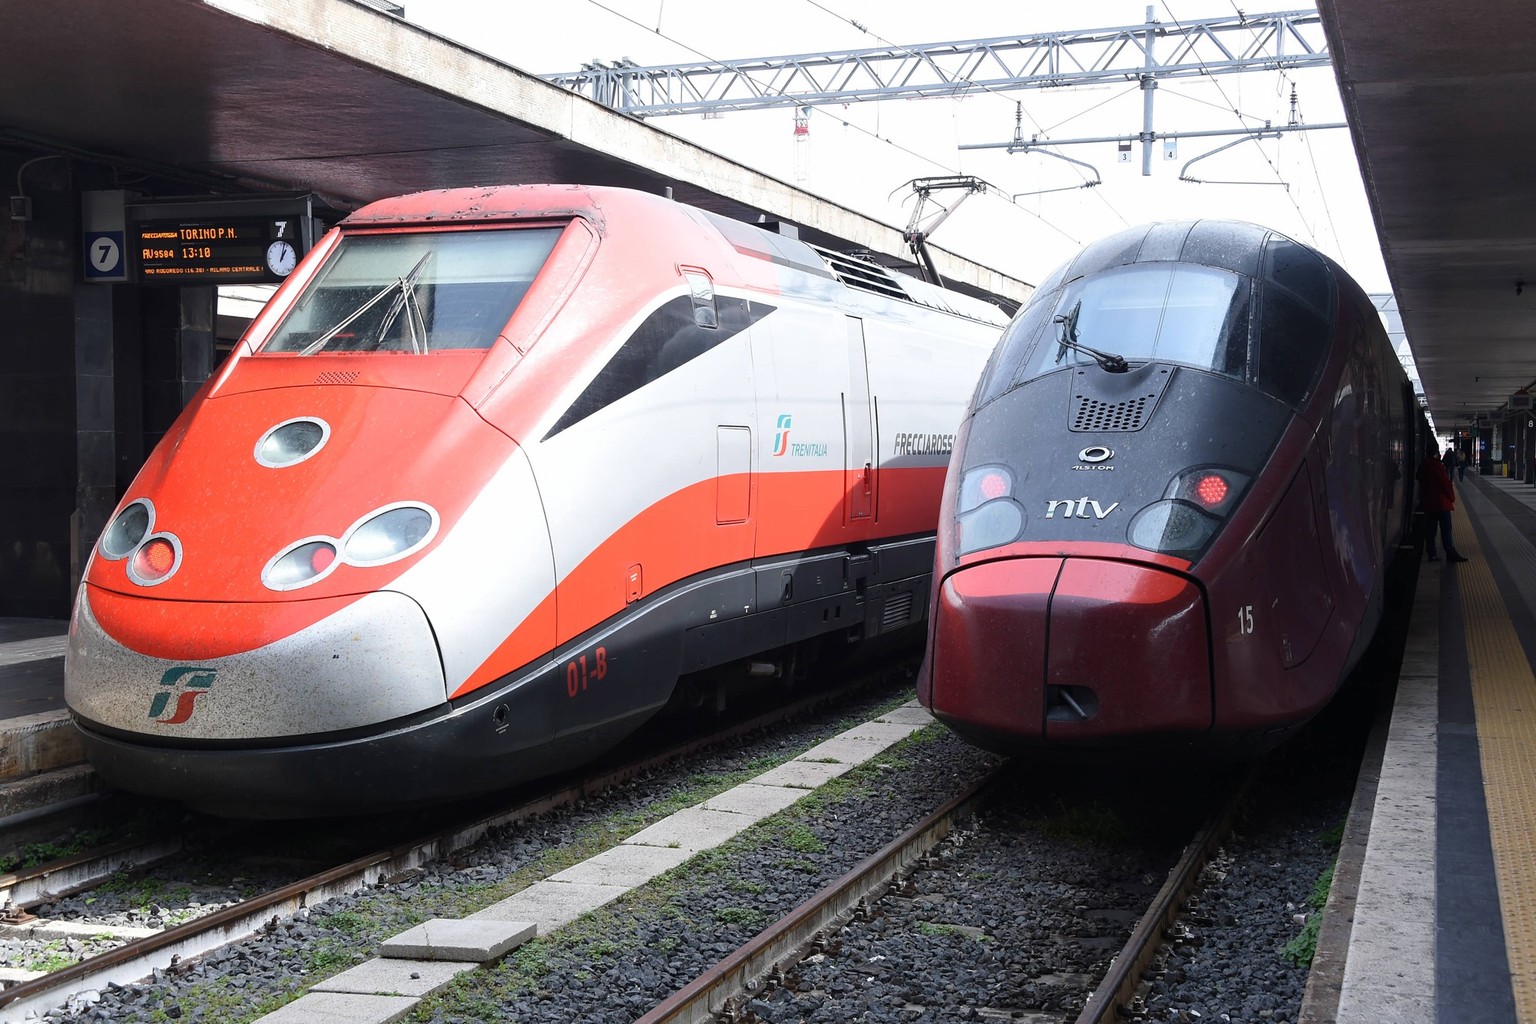 Frecciarossa train and Italo train at Termini railway station. Rome Italy, March 22nd, 2023 Rome Italy - ZUMAm169 20230322_zac_m169_069 Copyright: xMassimoxInsabatox